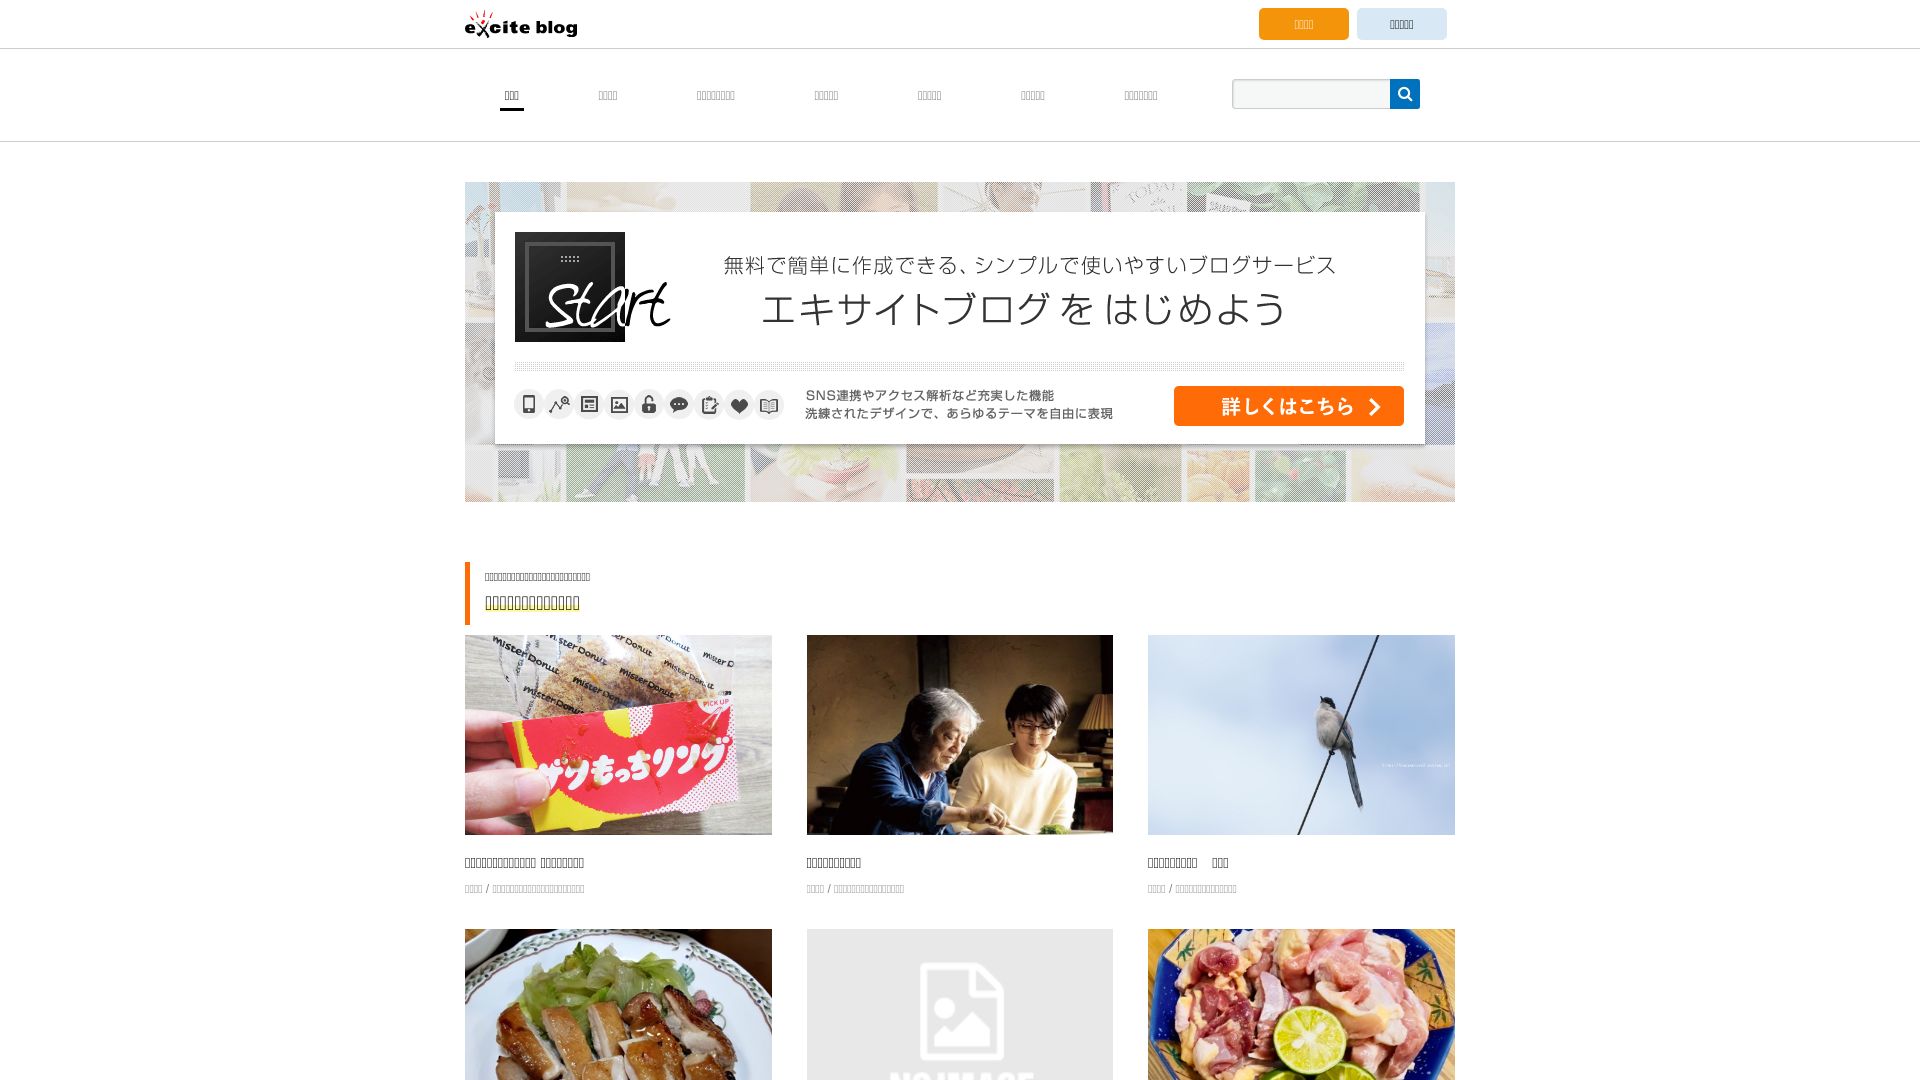 网站状态 exblog.jp 是  在线的